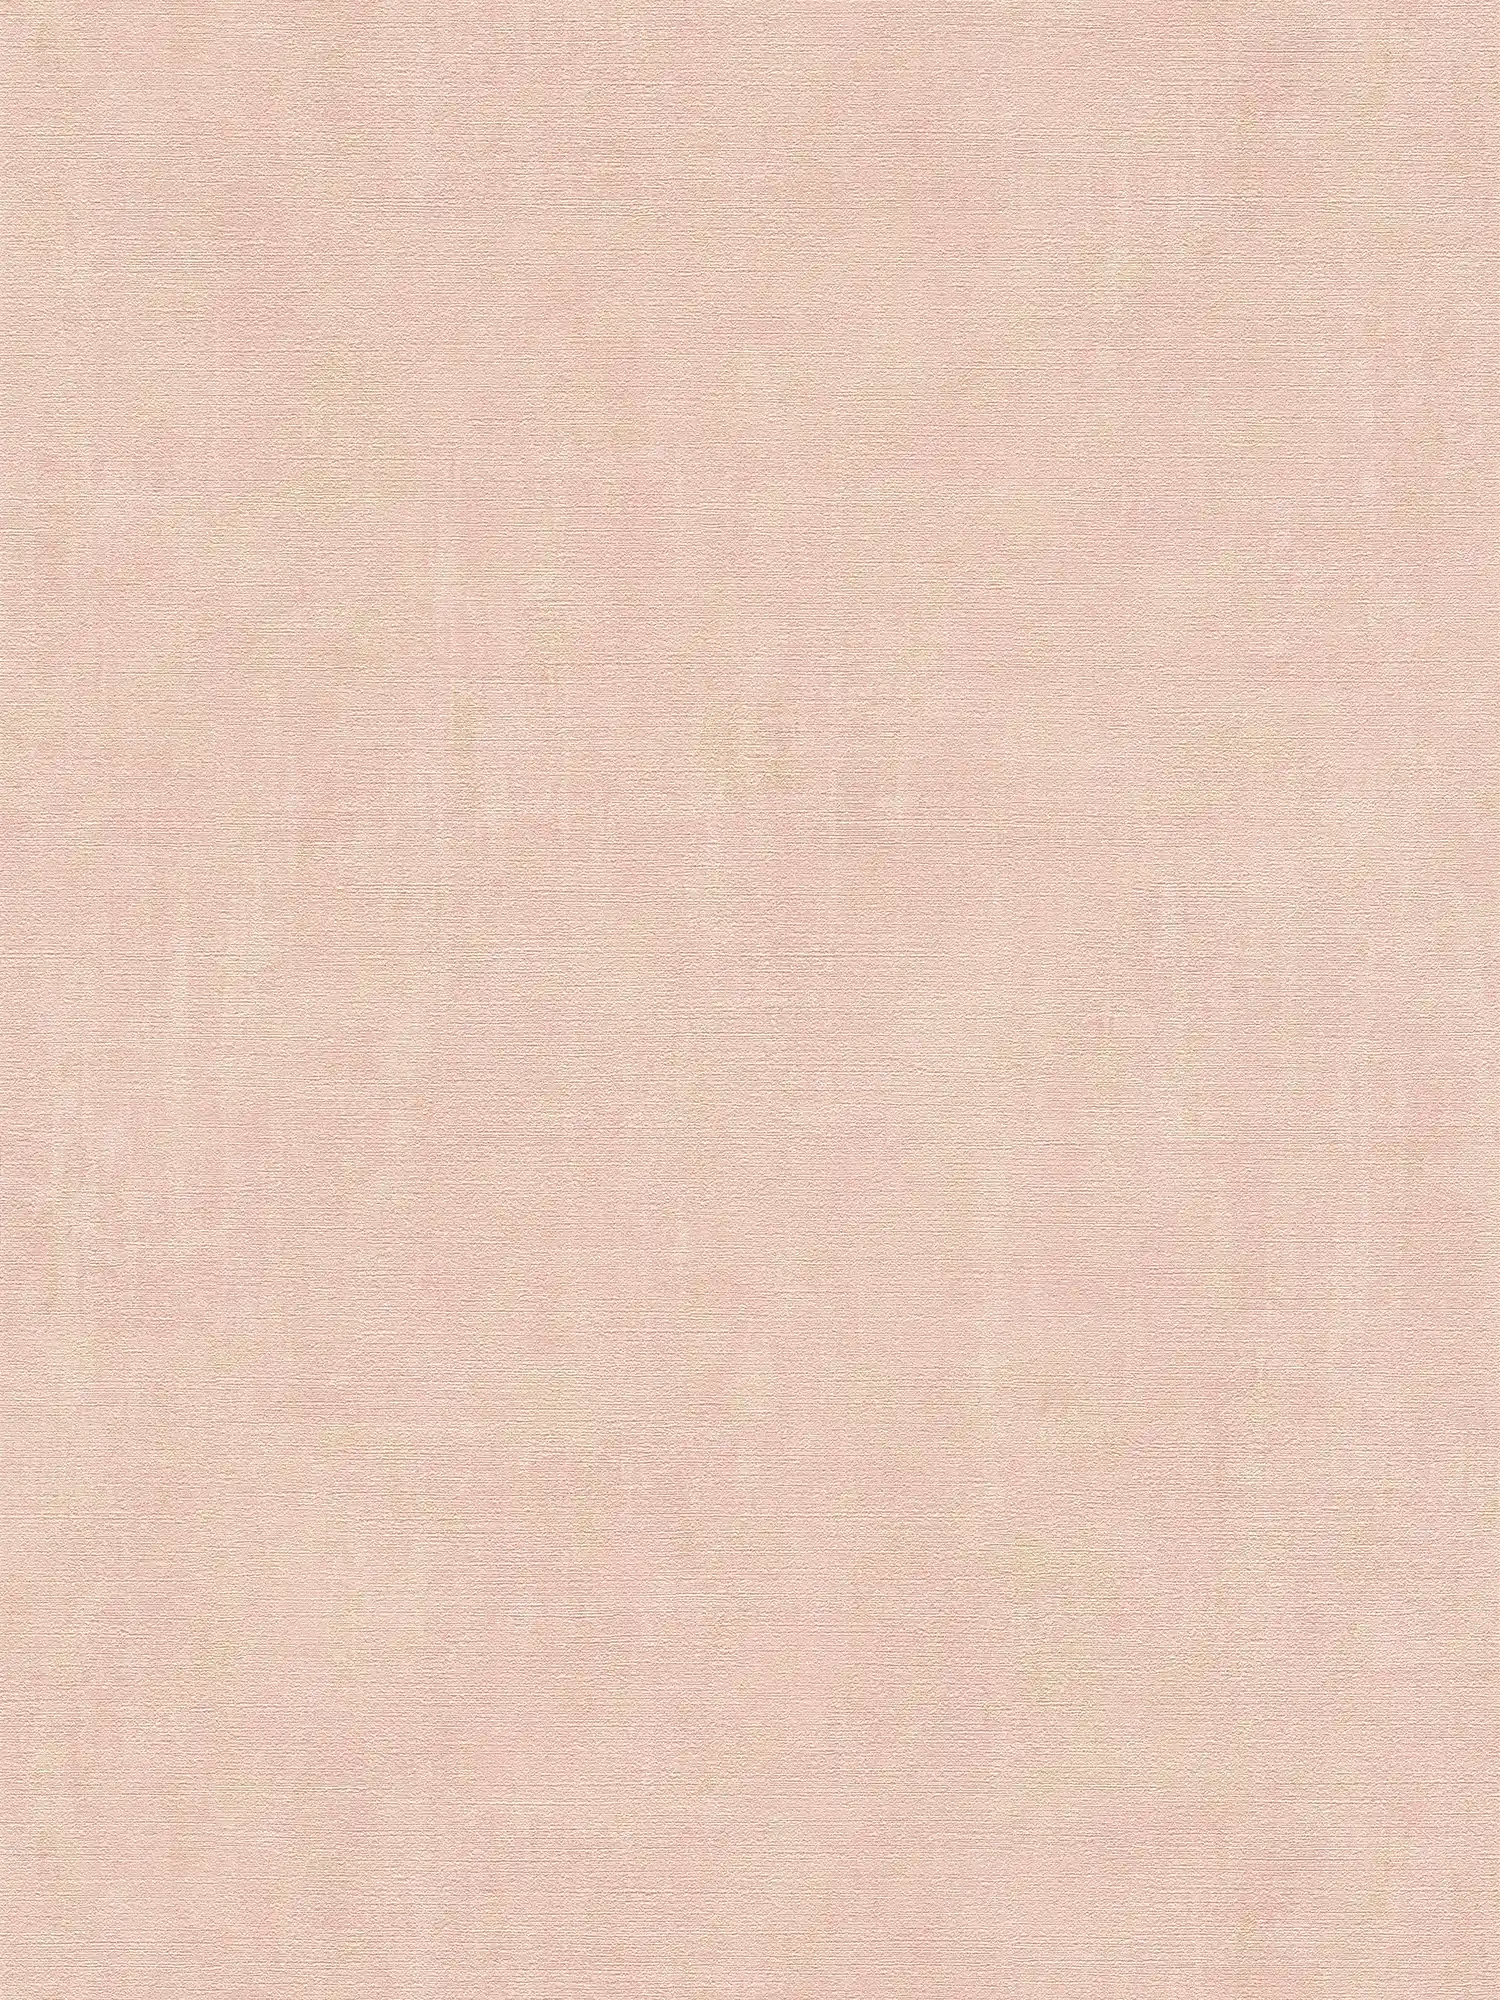 Papel pintado rosa acentos dorados efecto metálico moteado - metálico, rosa
